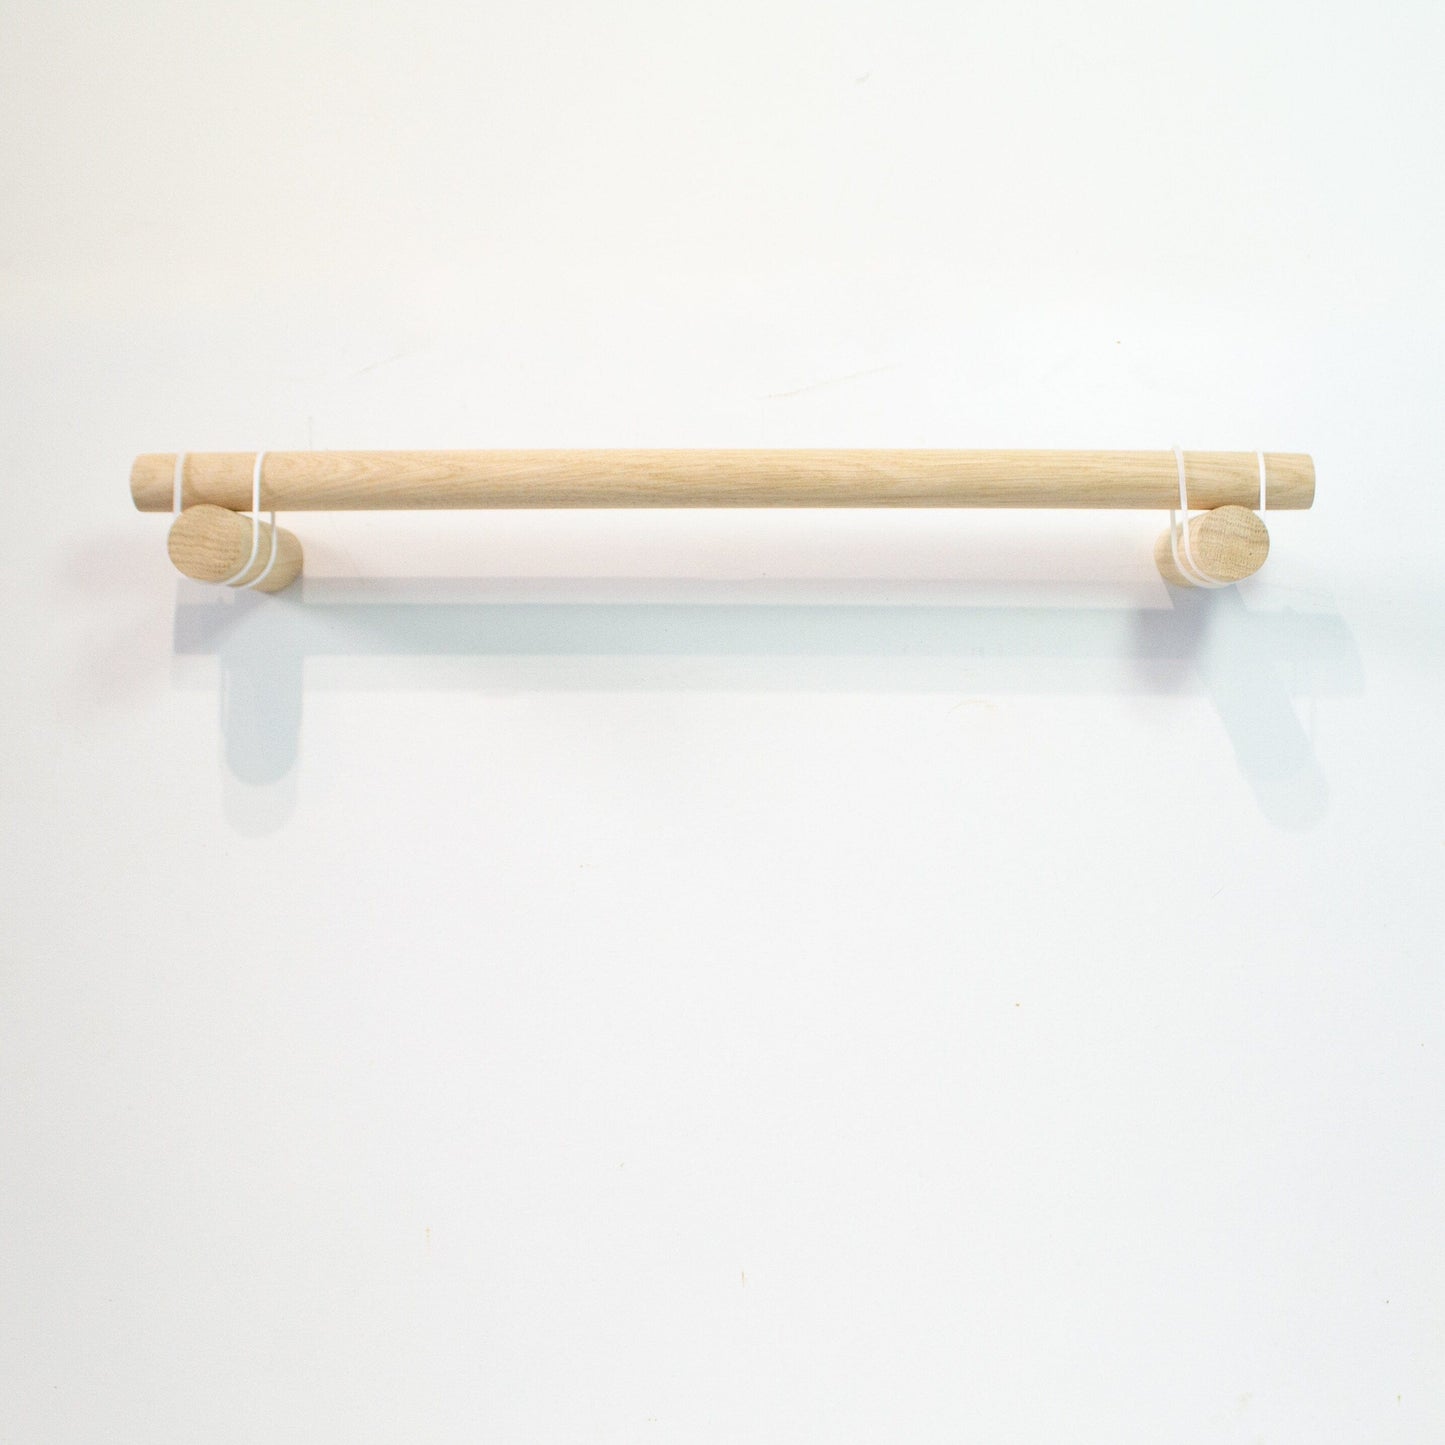 Wooden Kitchen Roll Holder, minimal kitchen wall mount rail